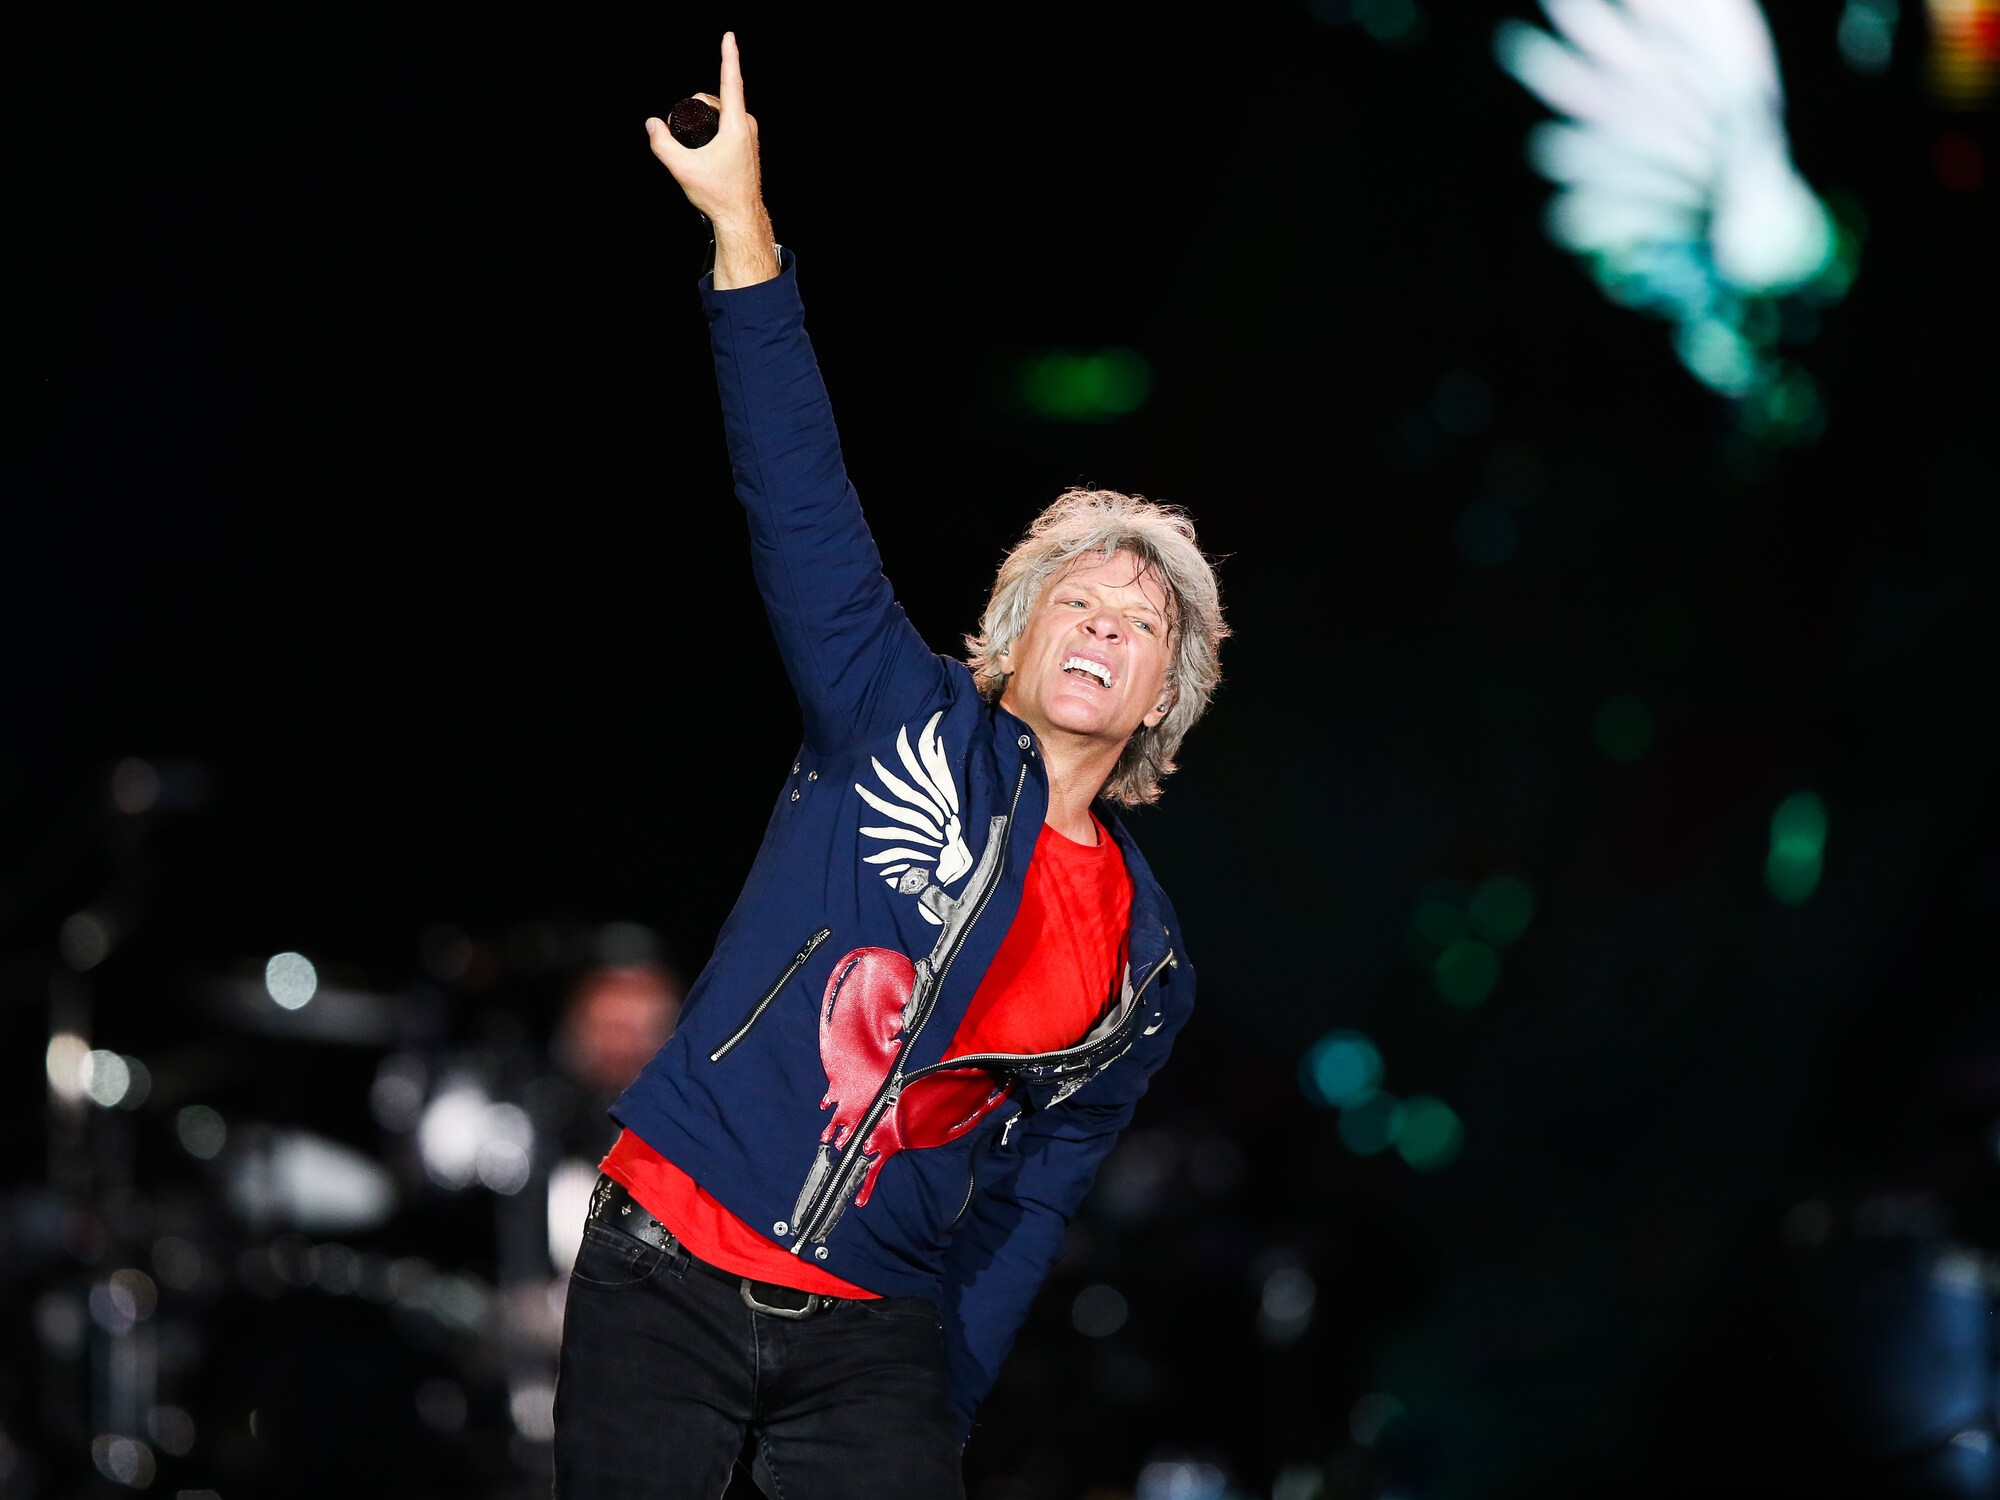 Jon Bon Jovi of the band Bon Jovi